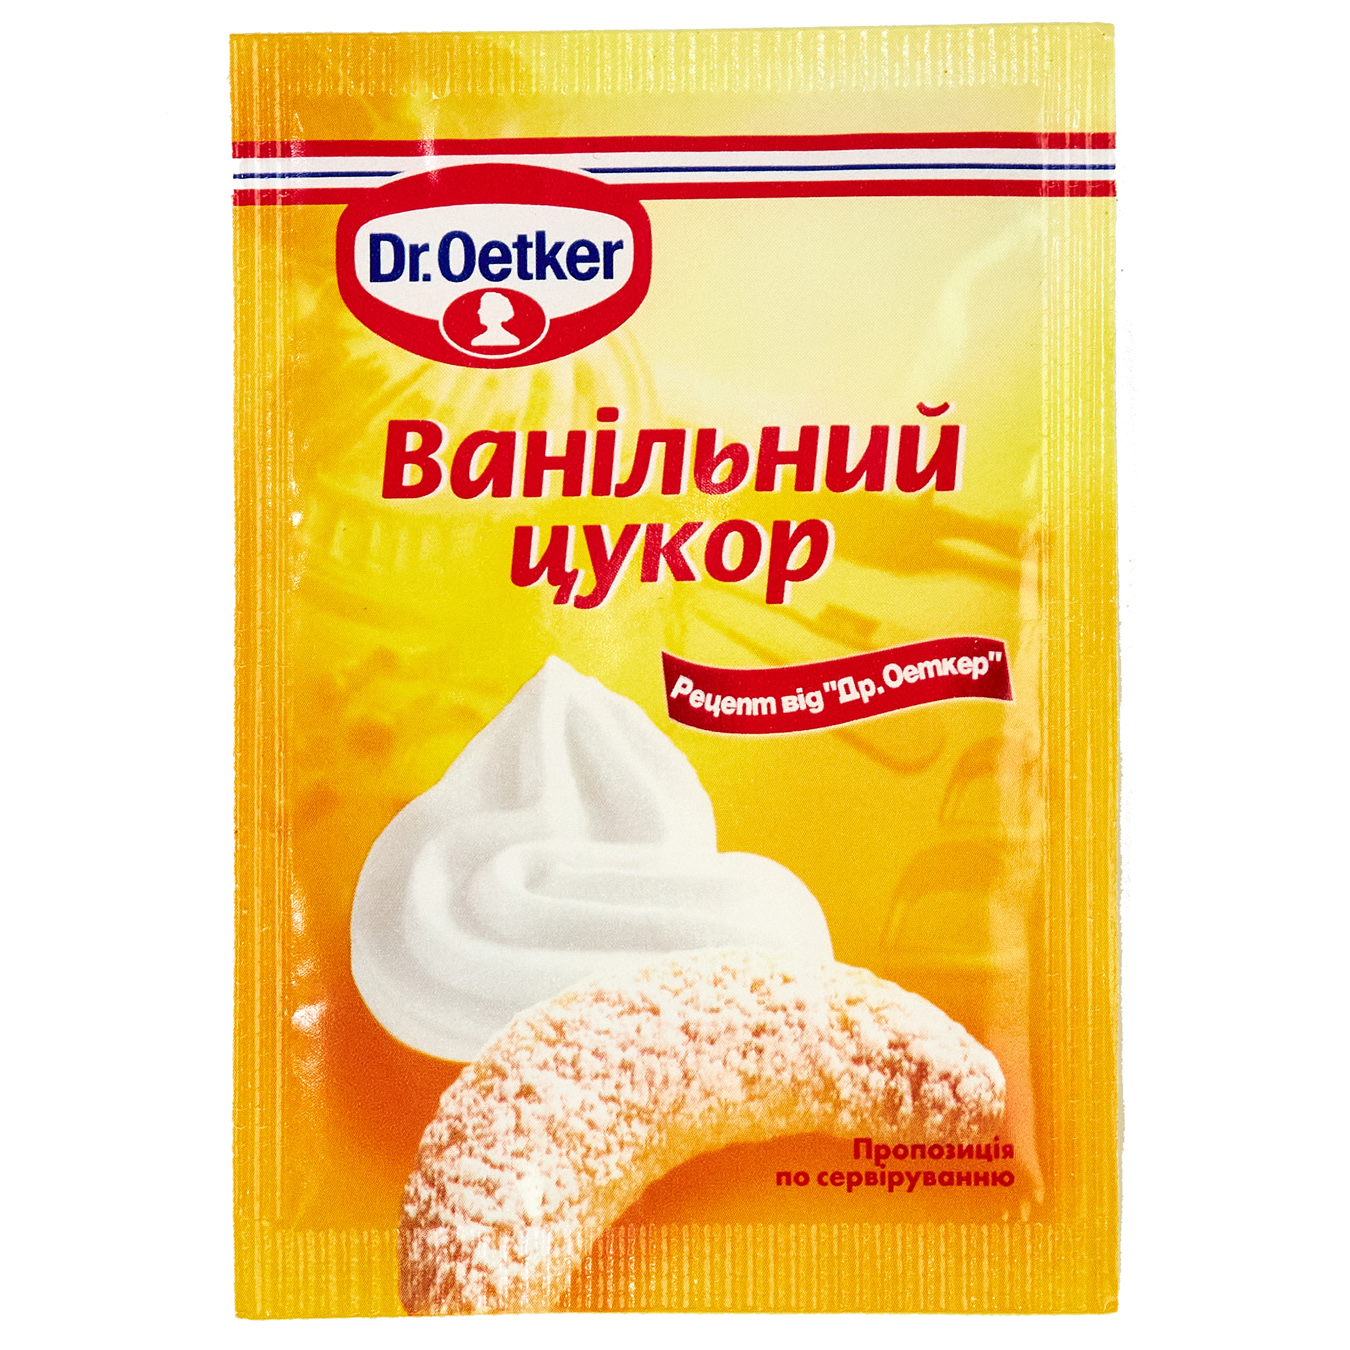 Dr.Oetker Vanilla Sugar 8g